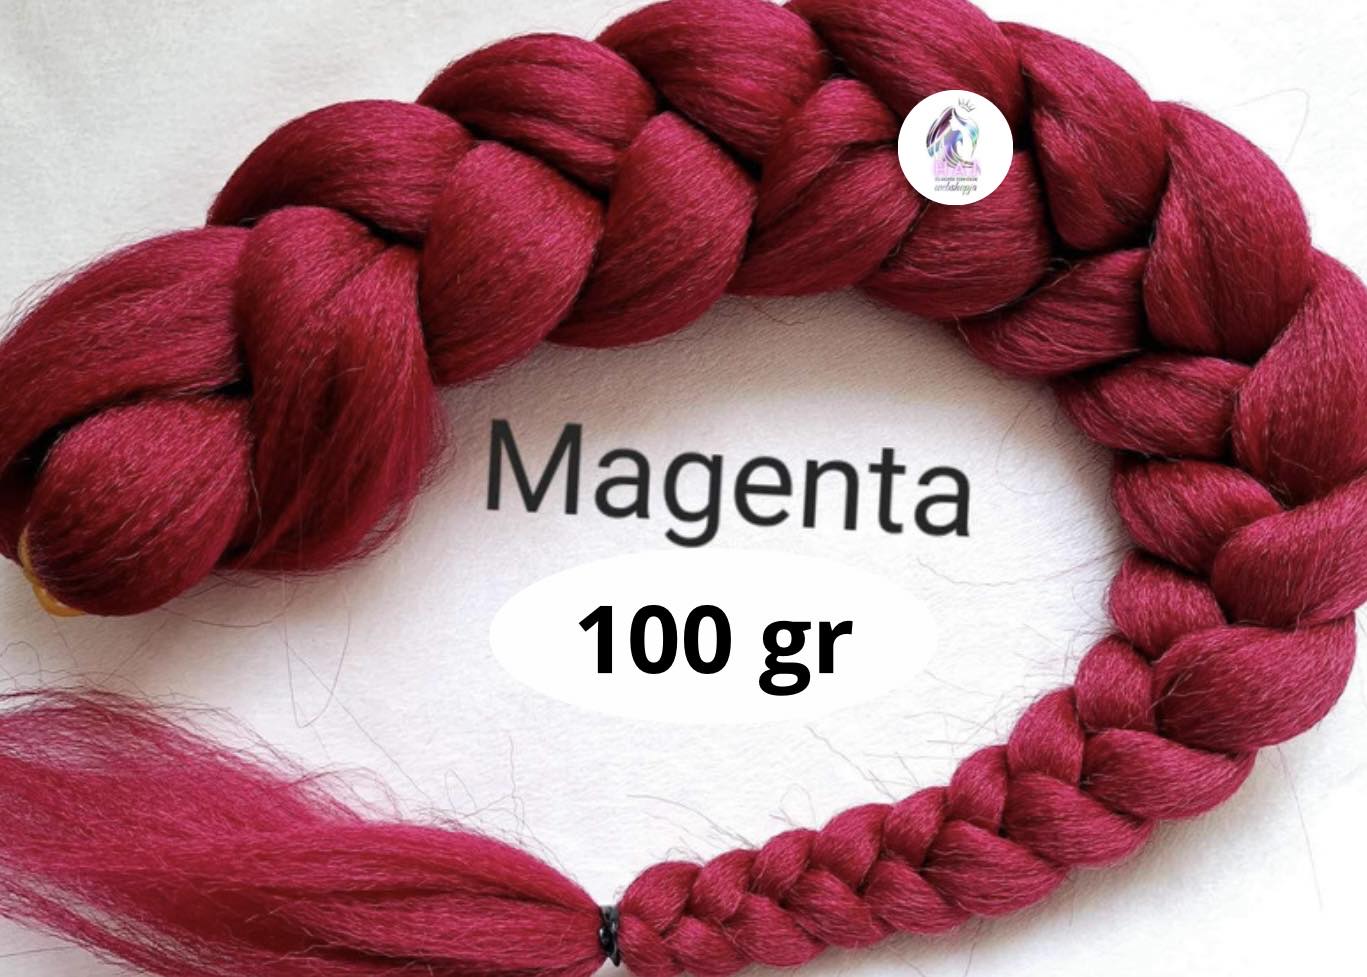 Magenta 100 gr - 1.700 Ft